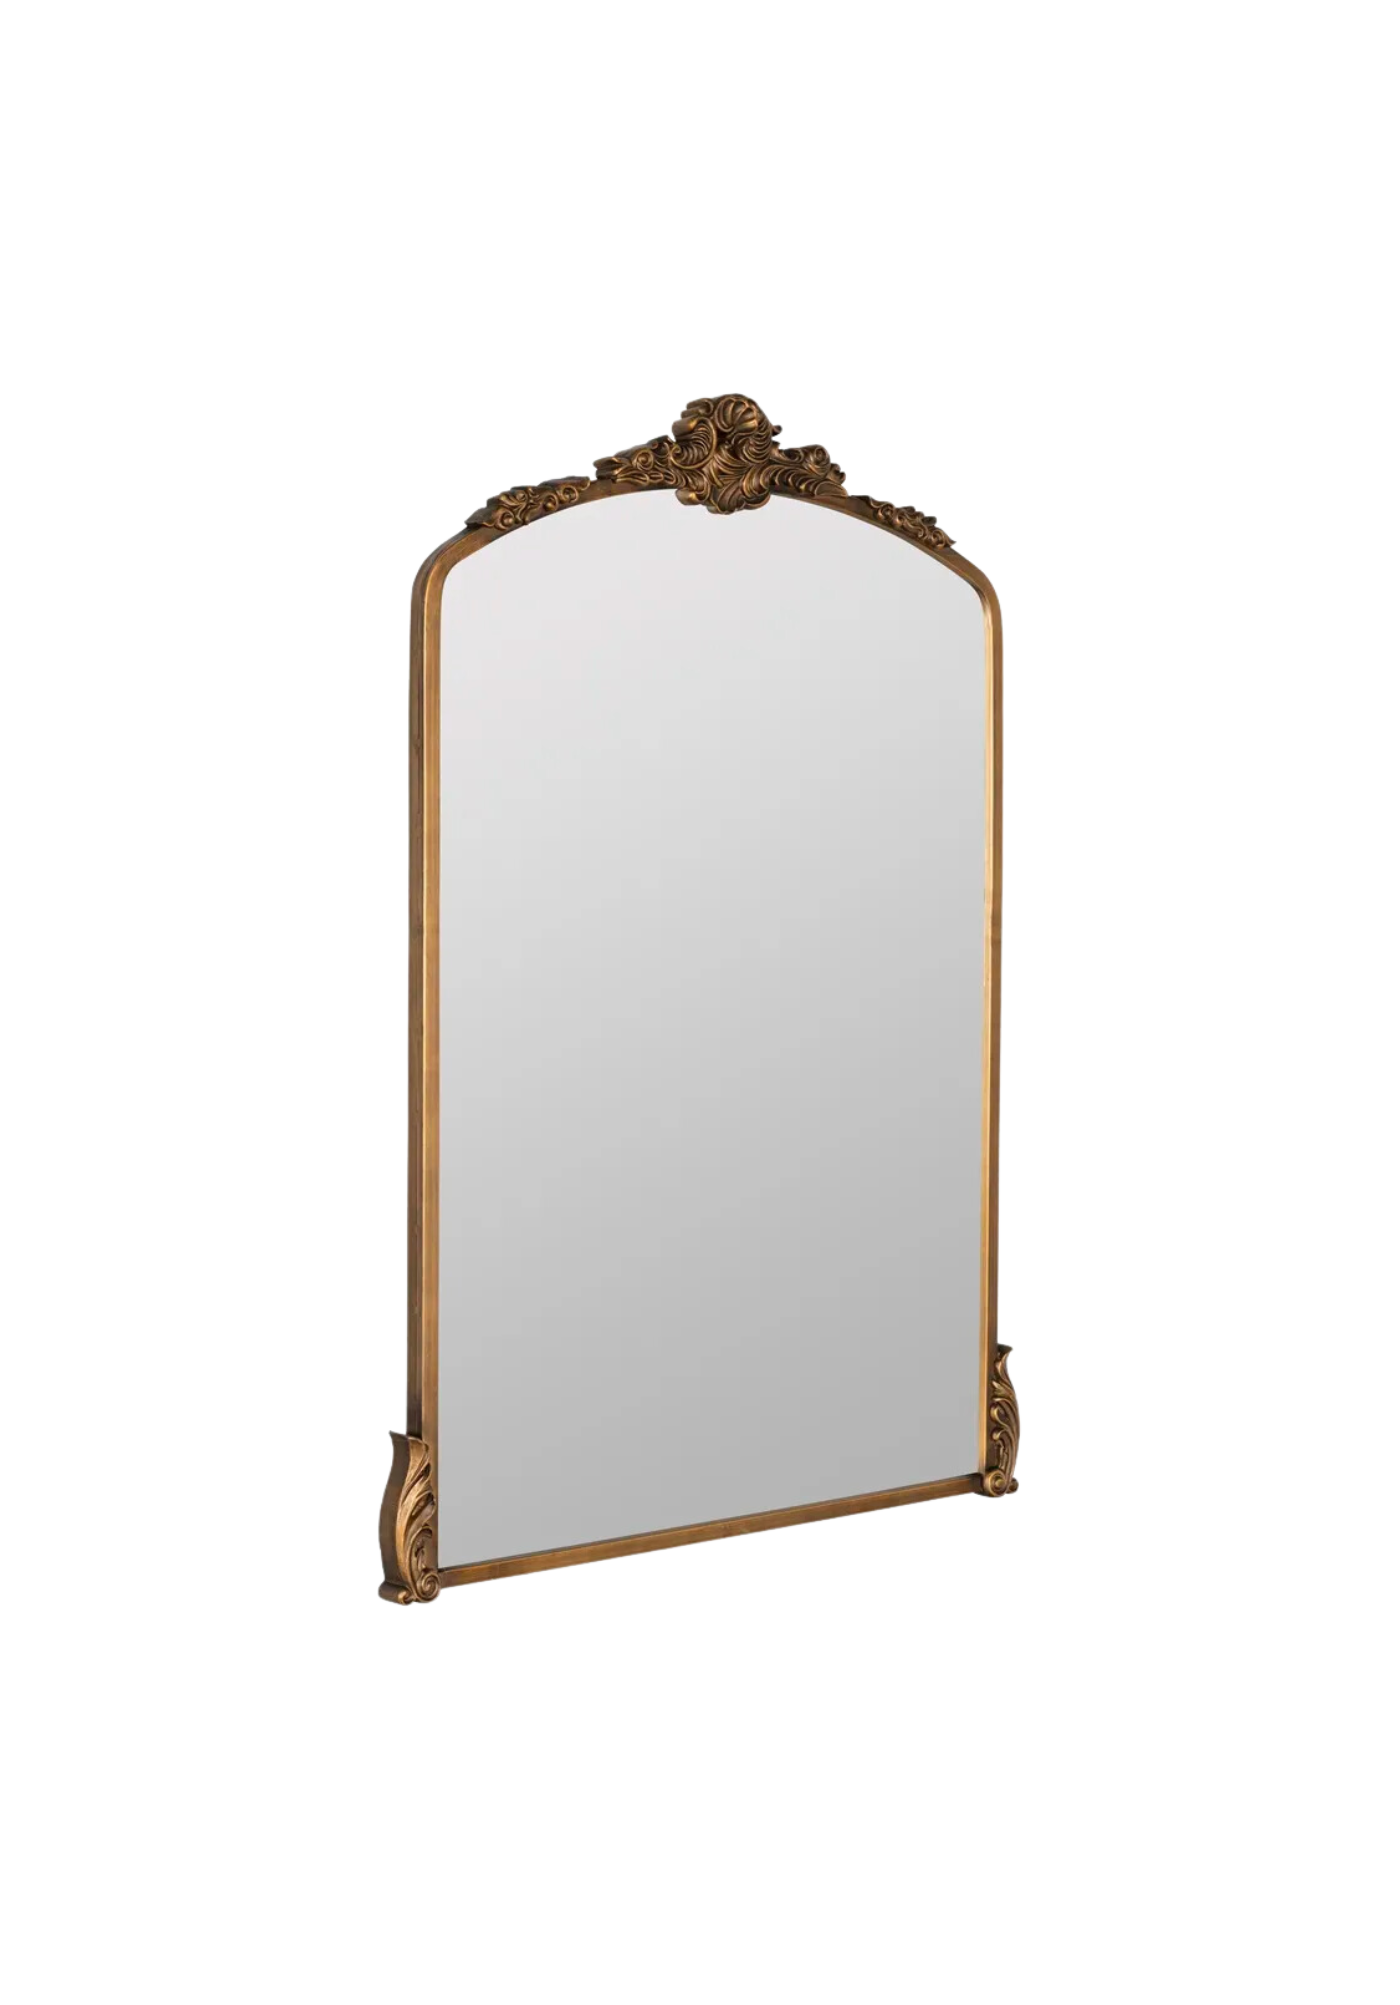 Golden Ornate Antique Arch Mirror